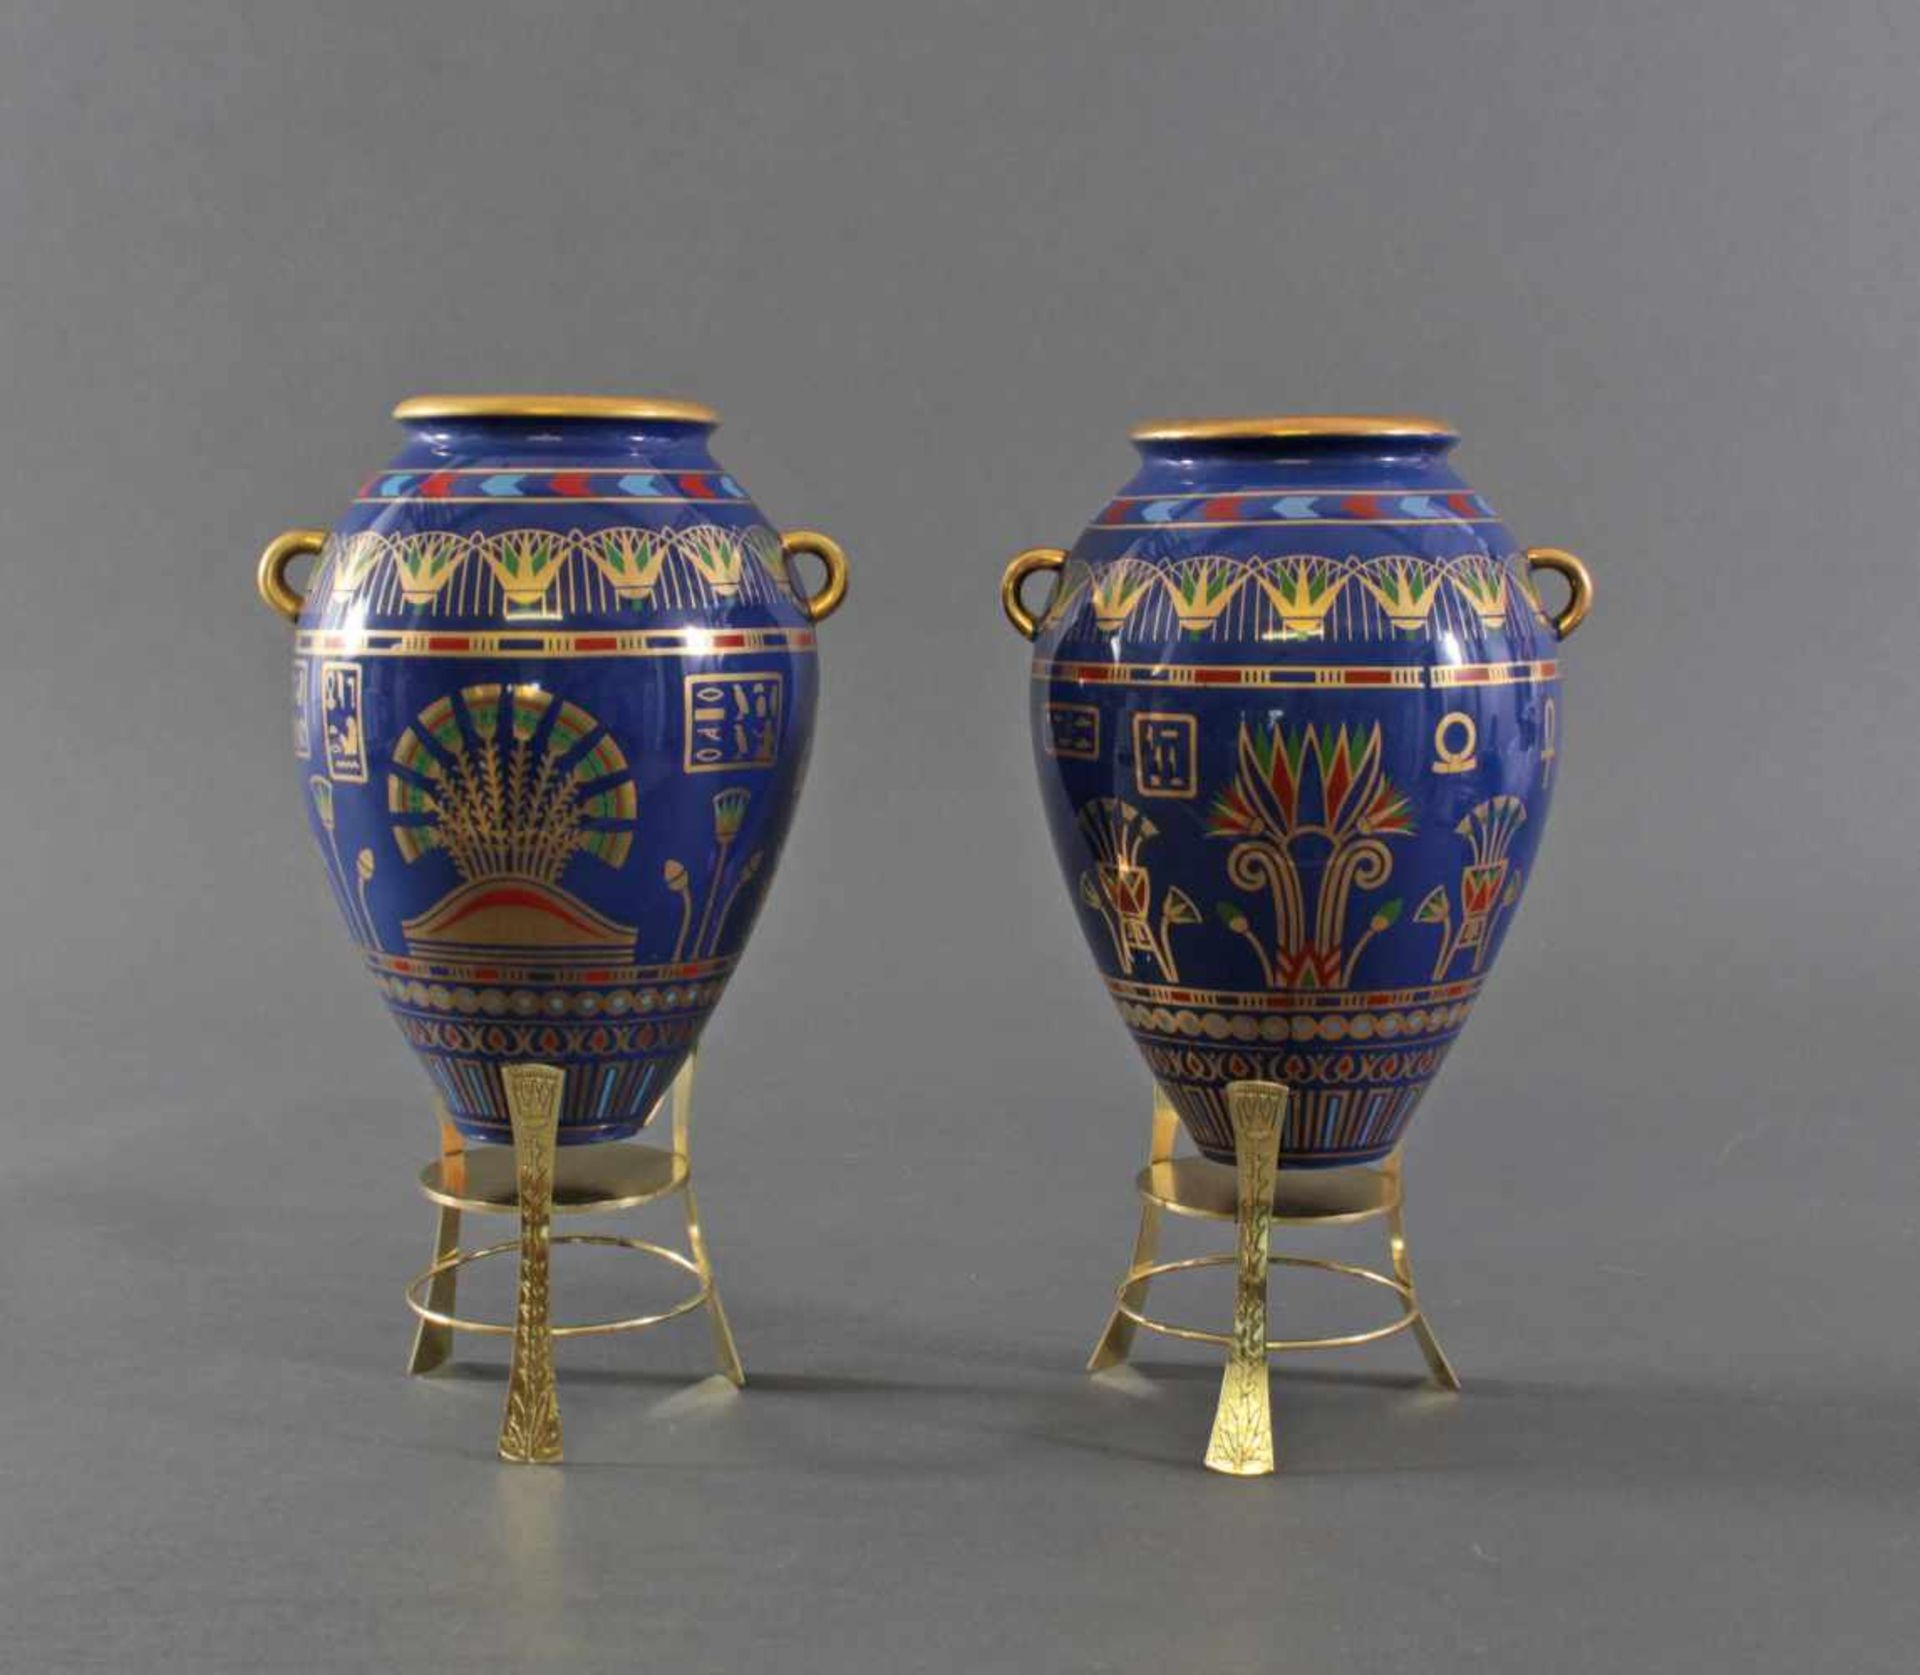 Paar Bastet Vasen von Roushdy Iskander Garas, Franklin Mint 19872 Porzellanvasen in - Bild 2 aus 3